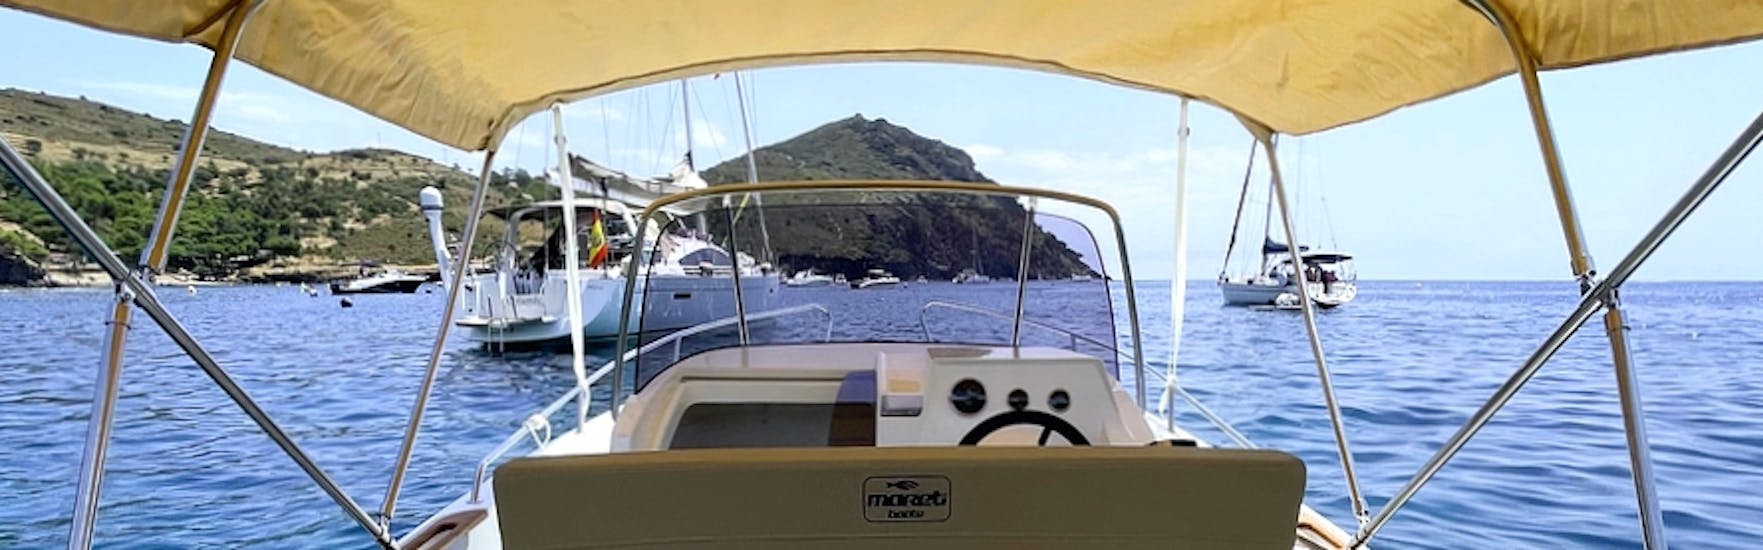 La moderna barca MARETI 600 OPEN in crociera sulle acque blu della baia delle rose durante il noleggio di una barca in Costa Brava per un massimo di 7 persone con patente con Maxi Boats Costa Brava.